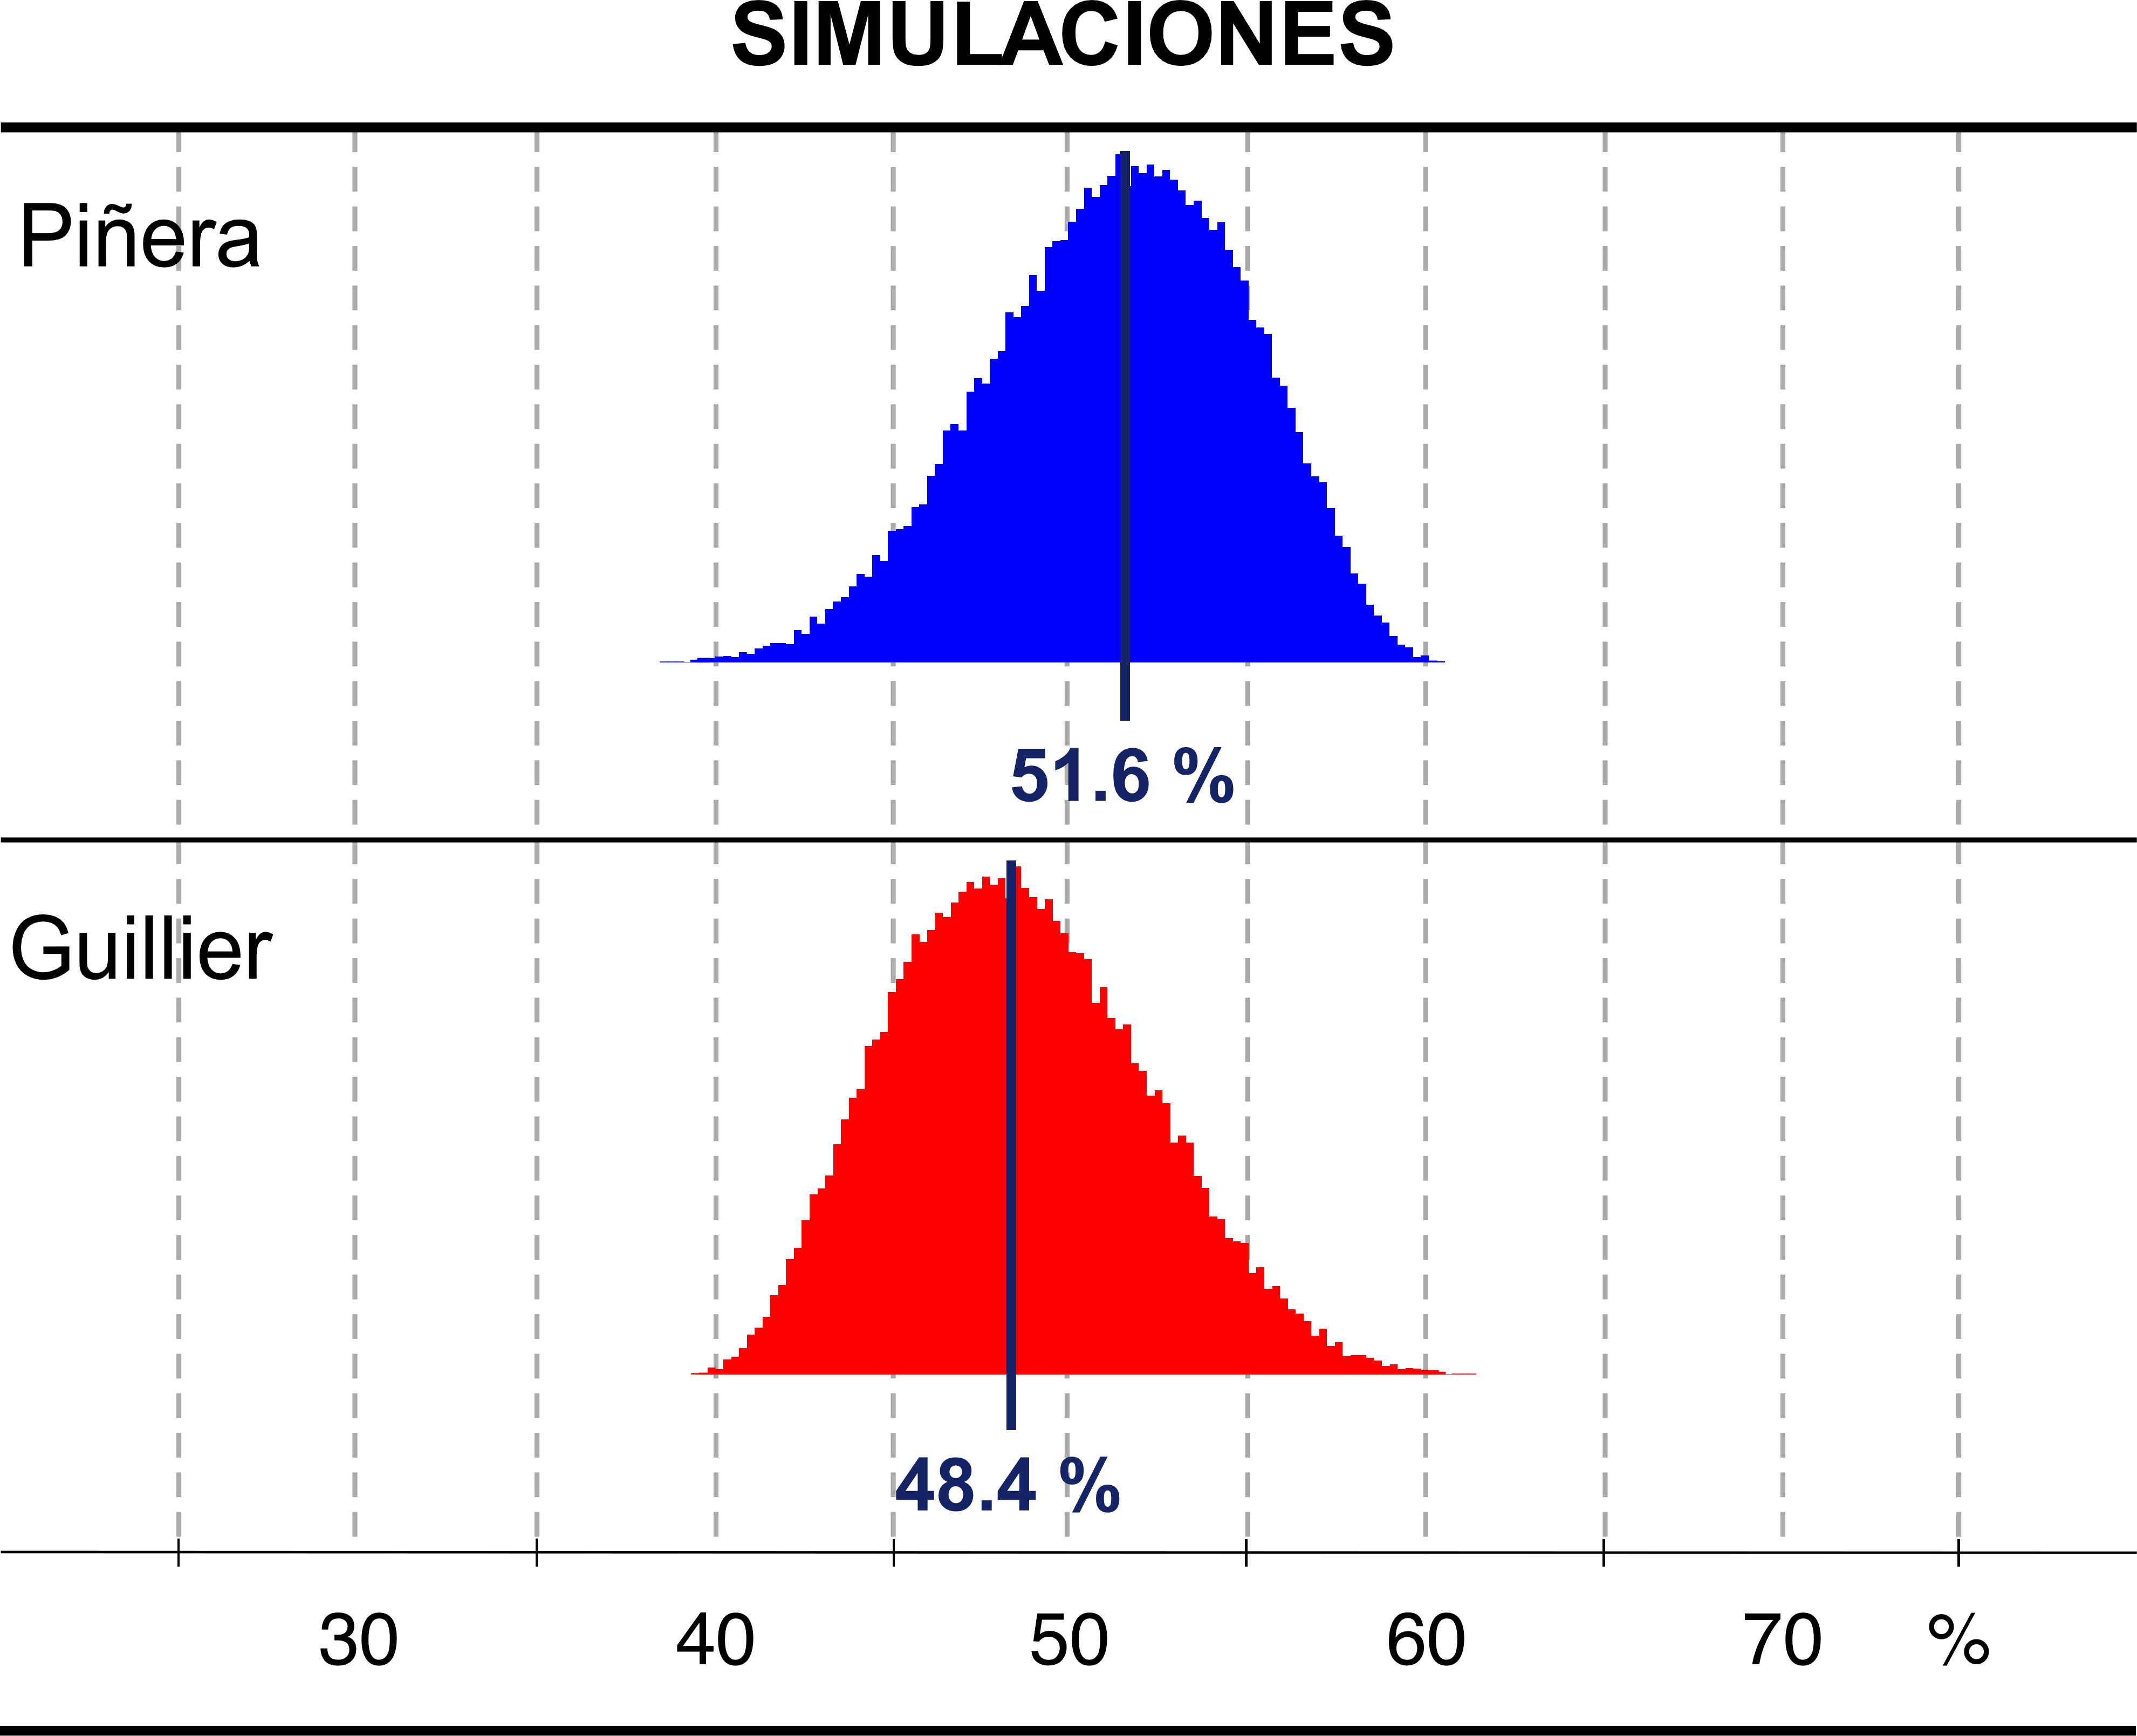 Histograma resultados simulaciones segunda vuelta (Elección Presidencial Chile 2017)